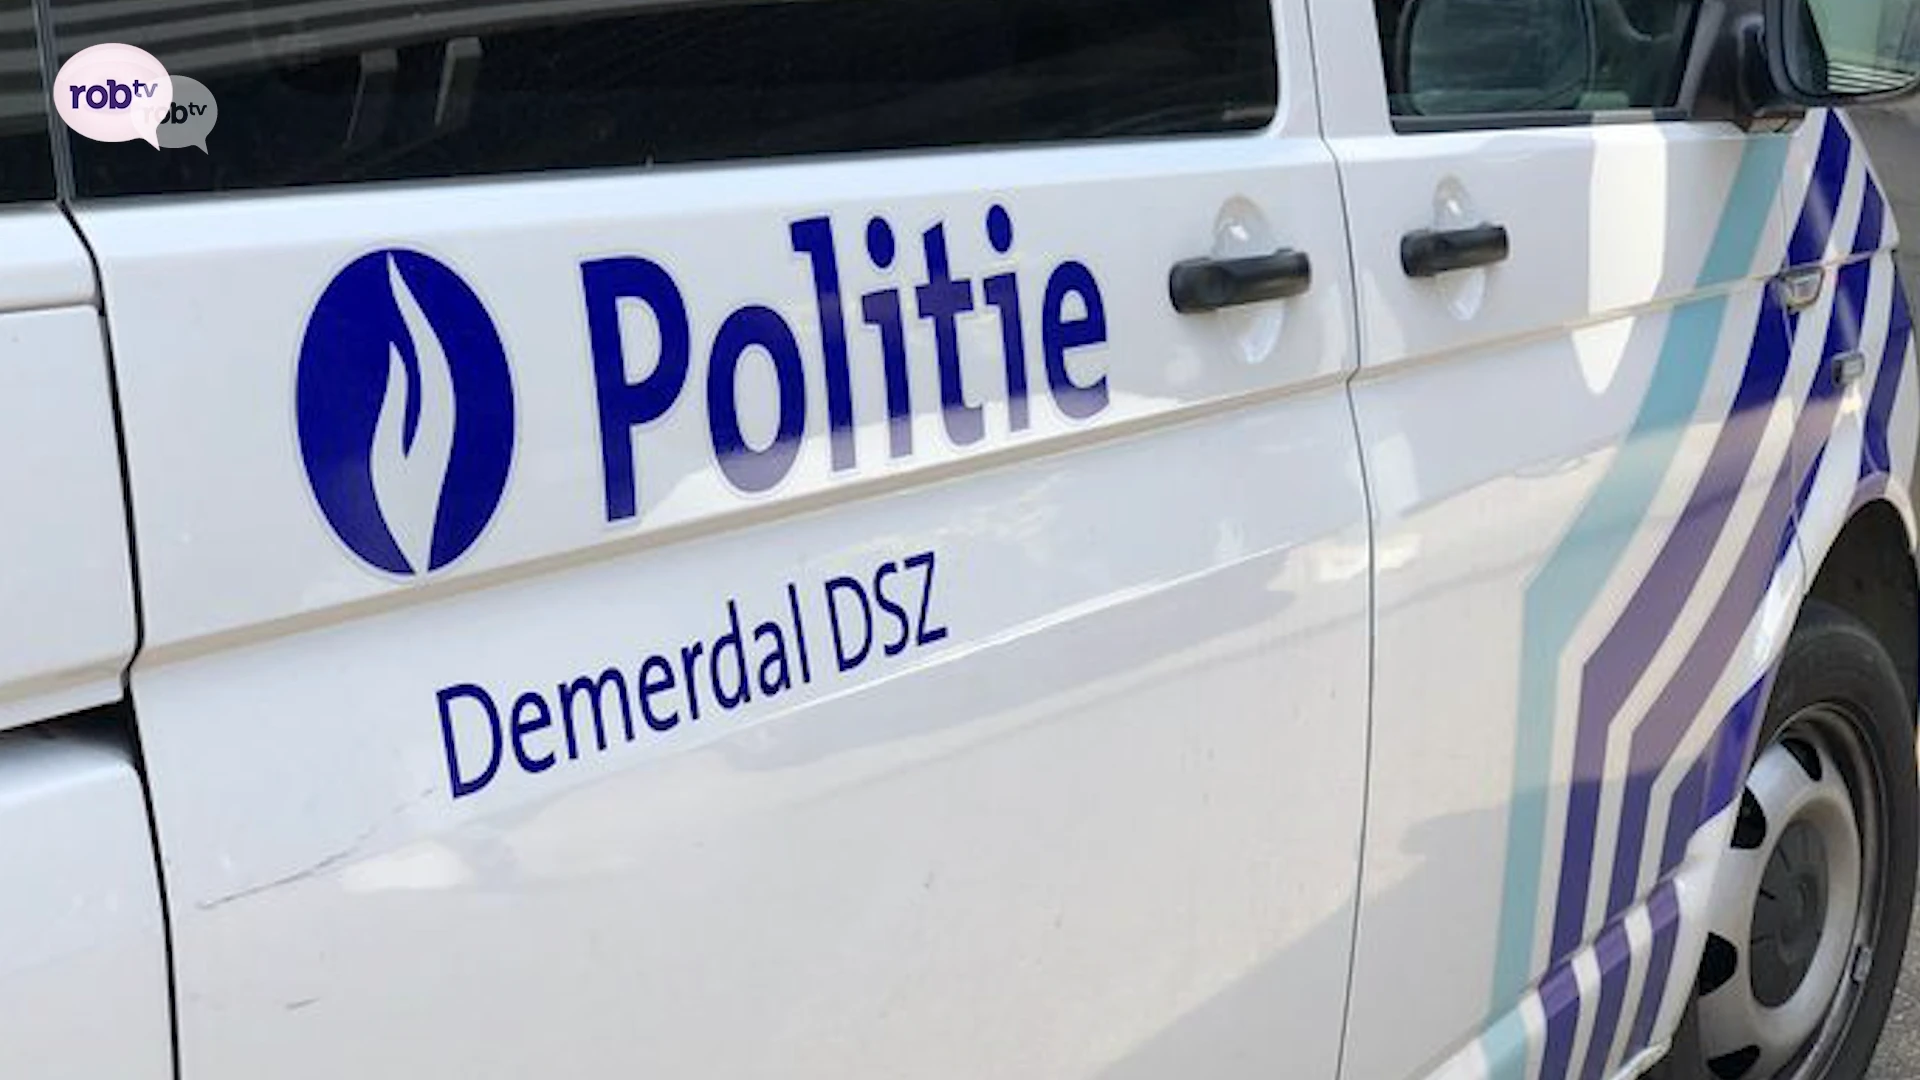 Vijf medewerkers politie Demerdal blijven 4 maanden langer geschorst, onderzoek naar mogelijke inbreuken drugwet gaat verder